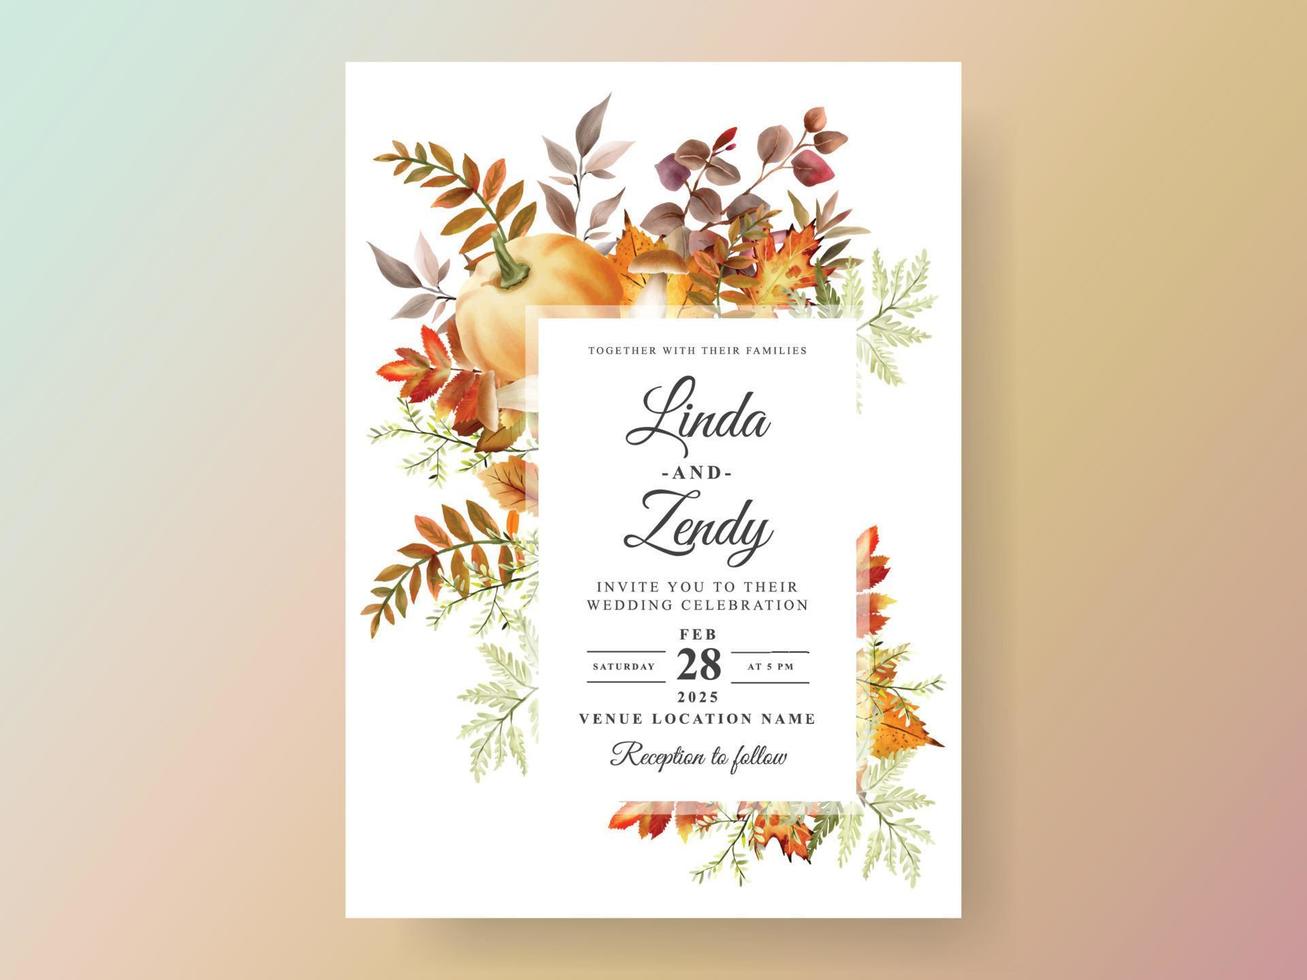 herfst bruiloft uitnodiging kaart met pompoen en paddestoel en vogel en bladeren waterverf vector